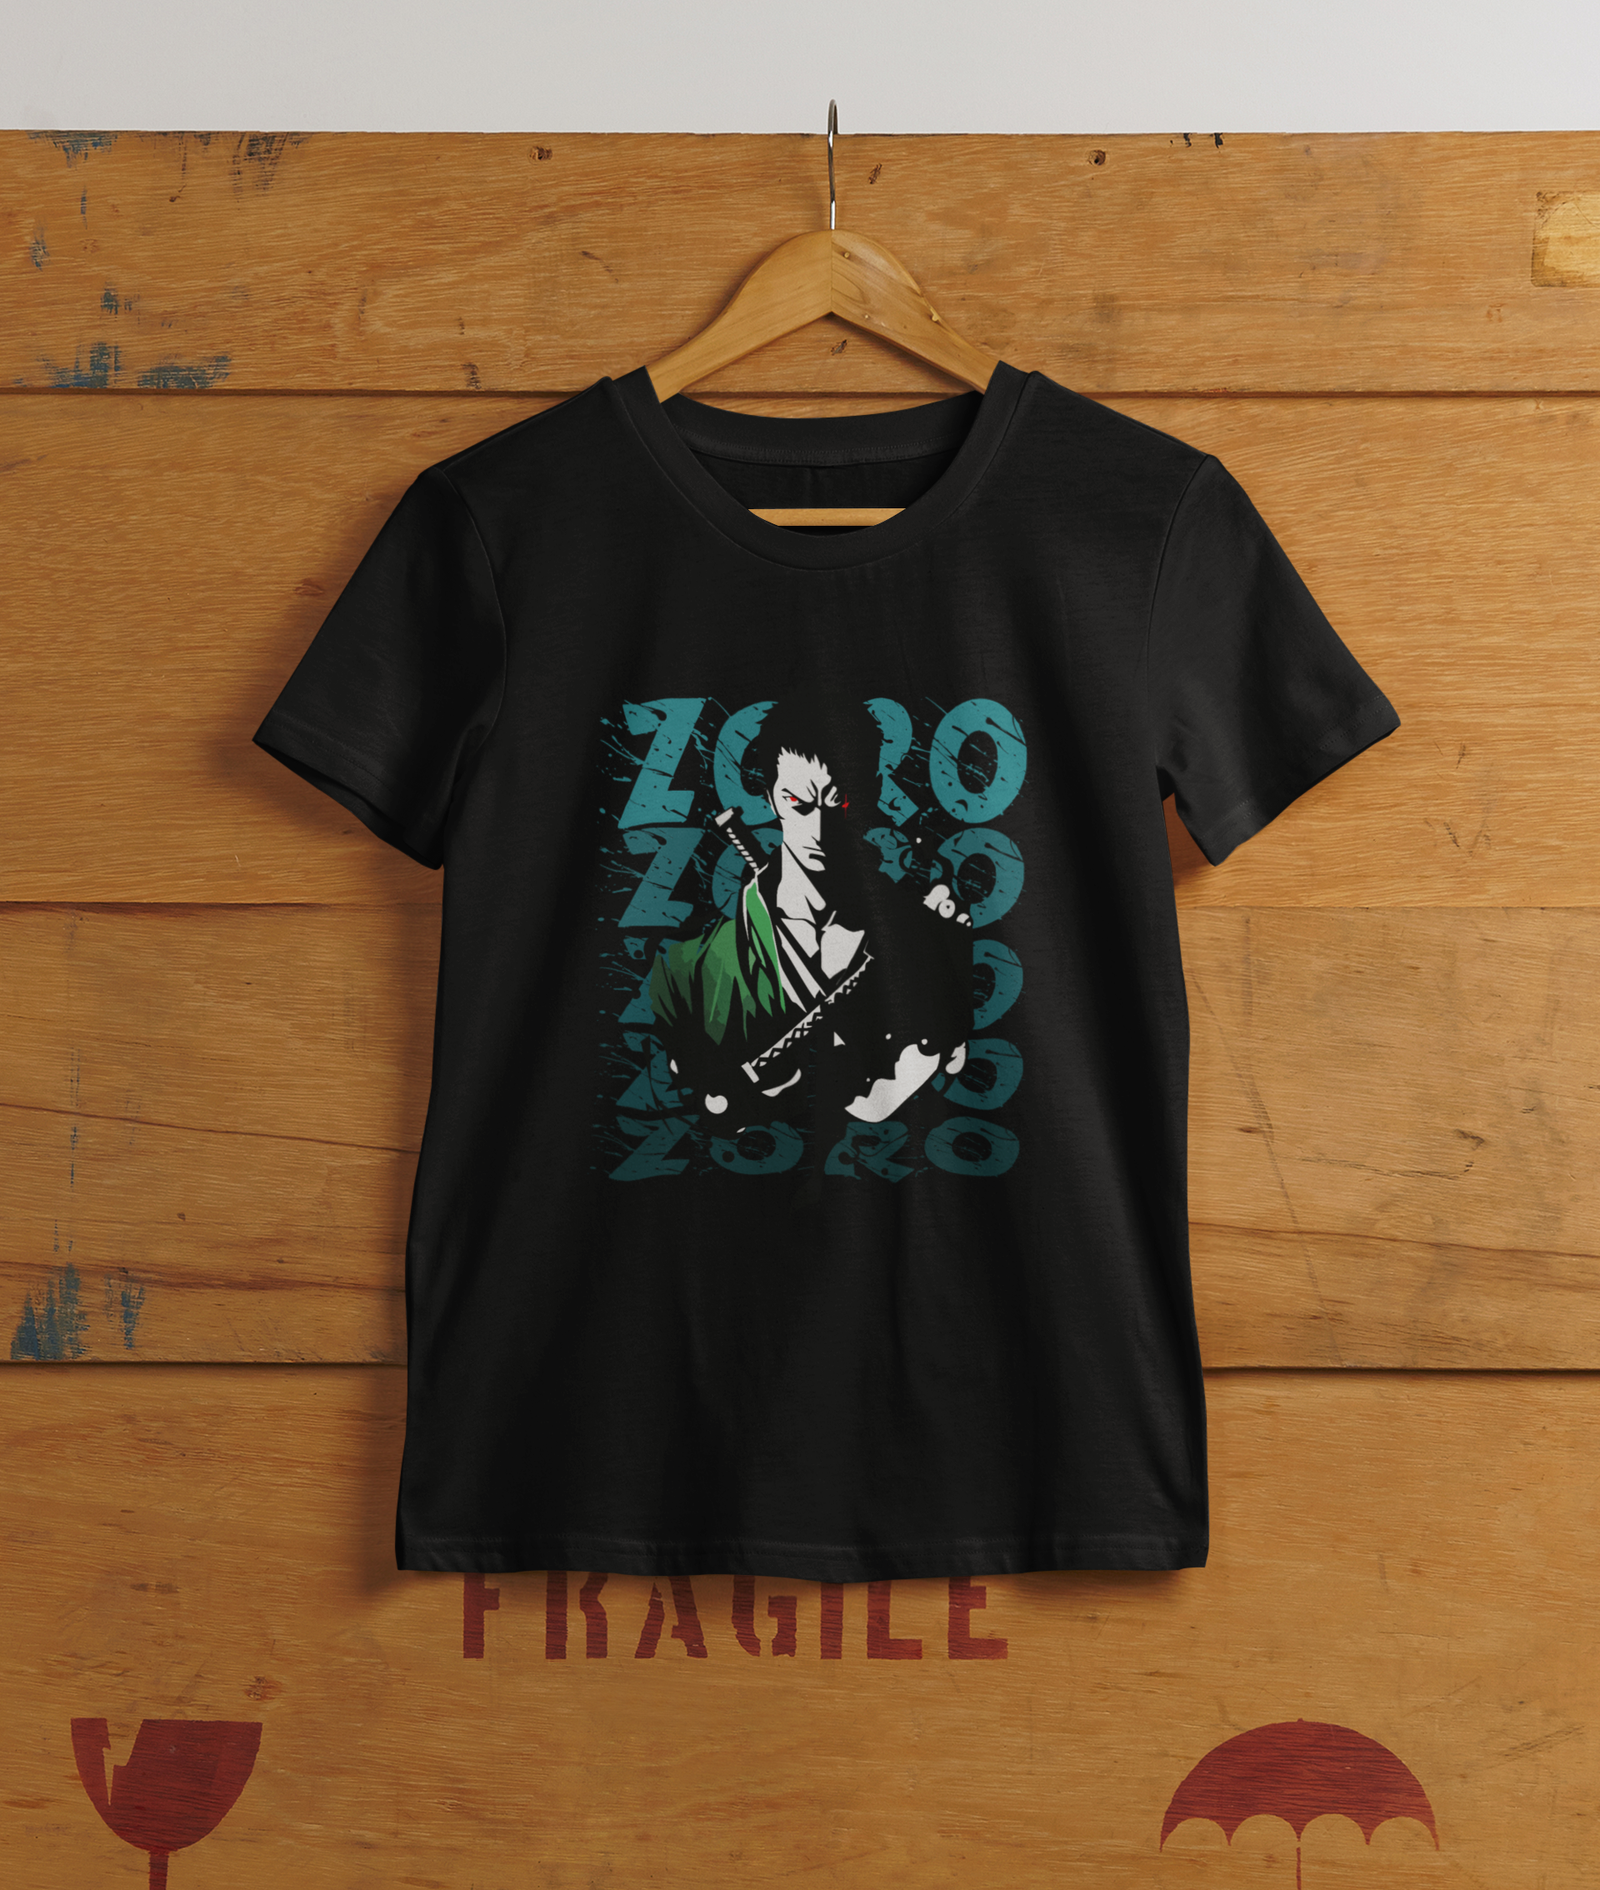 Zoro 1 - Anime fanart mens printed t-shirt